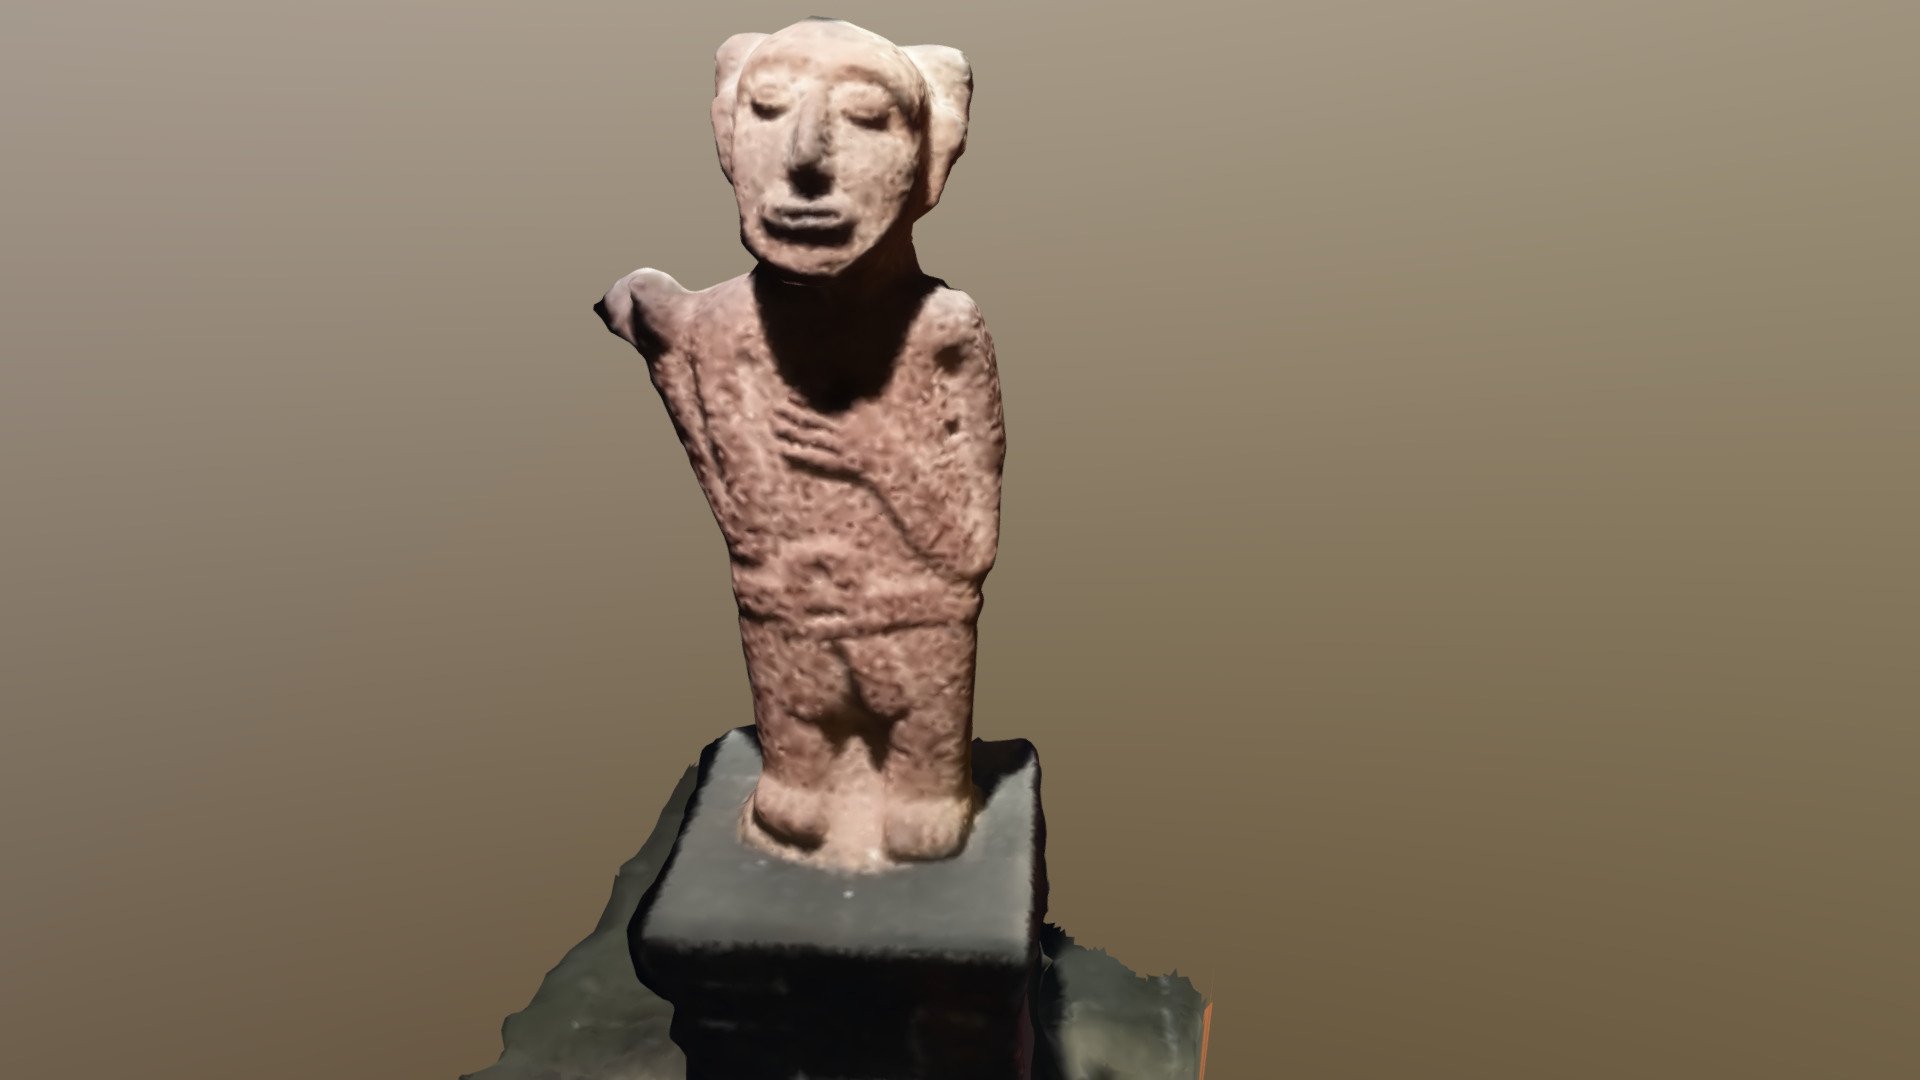 Aztec Statue